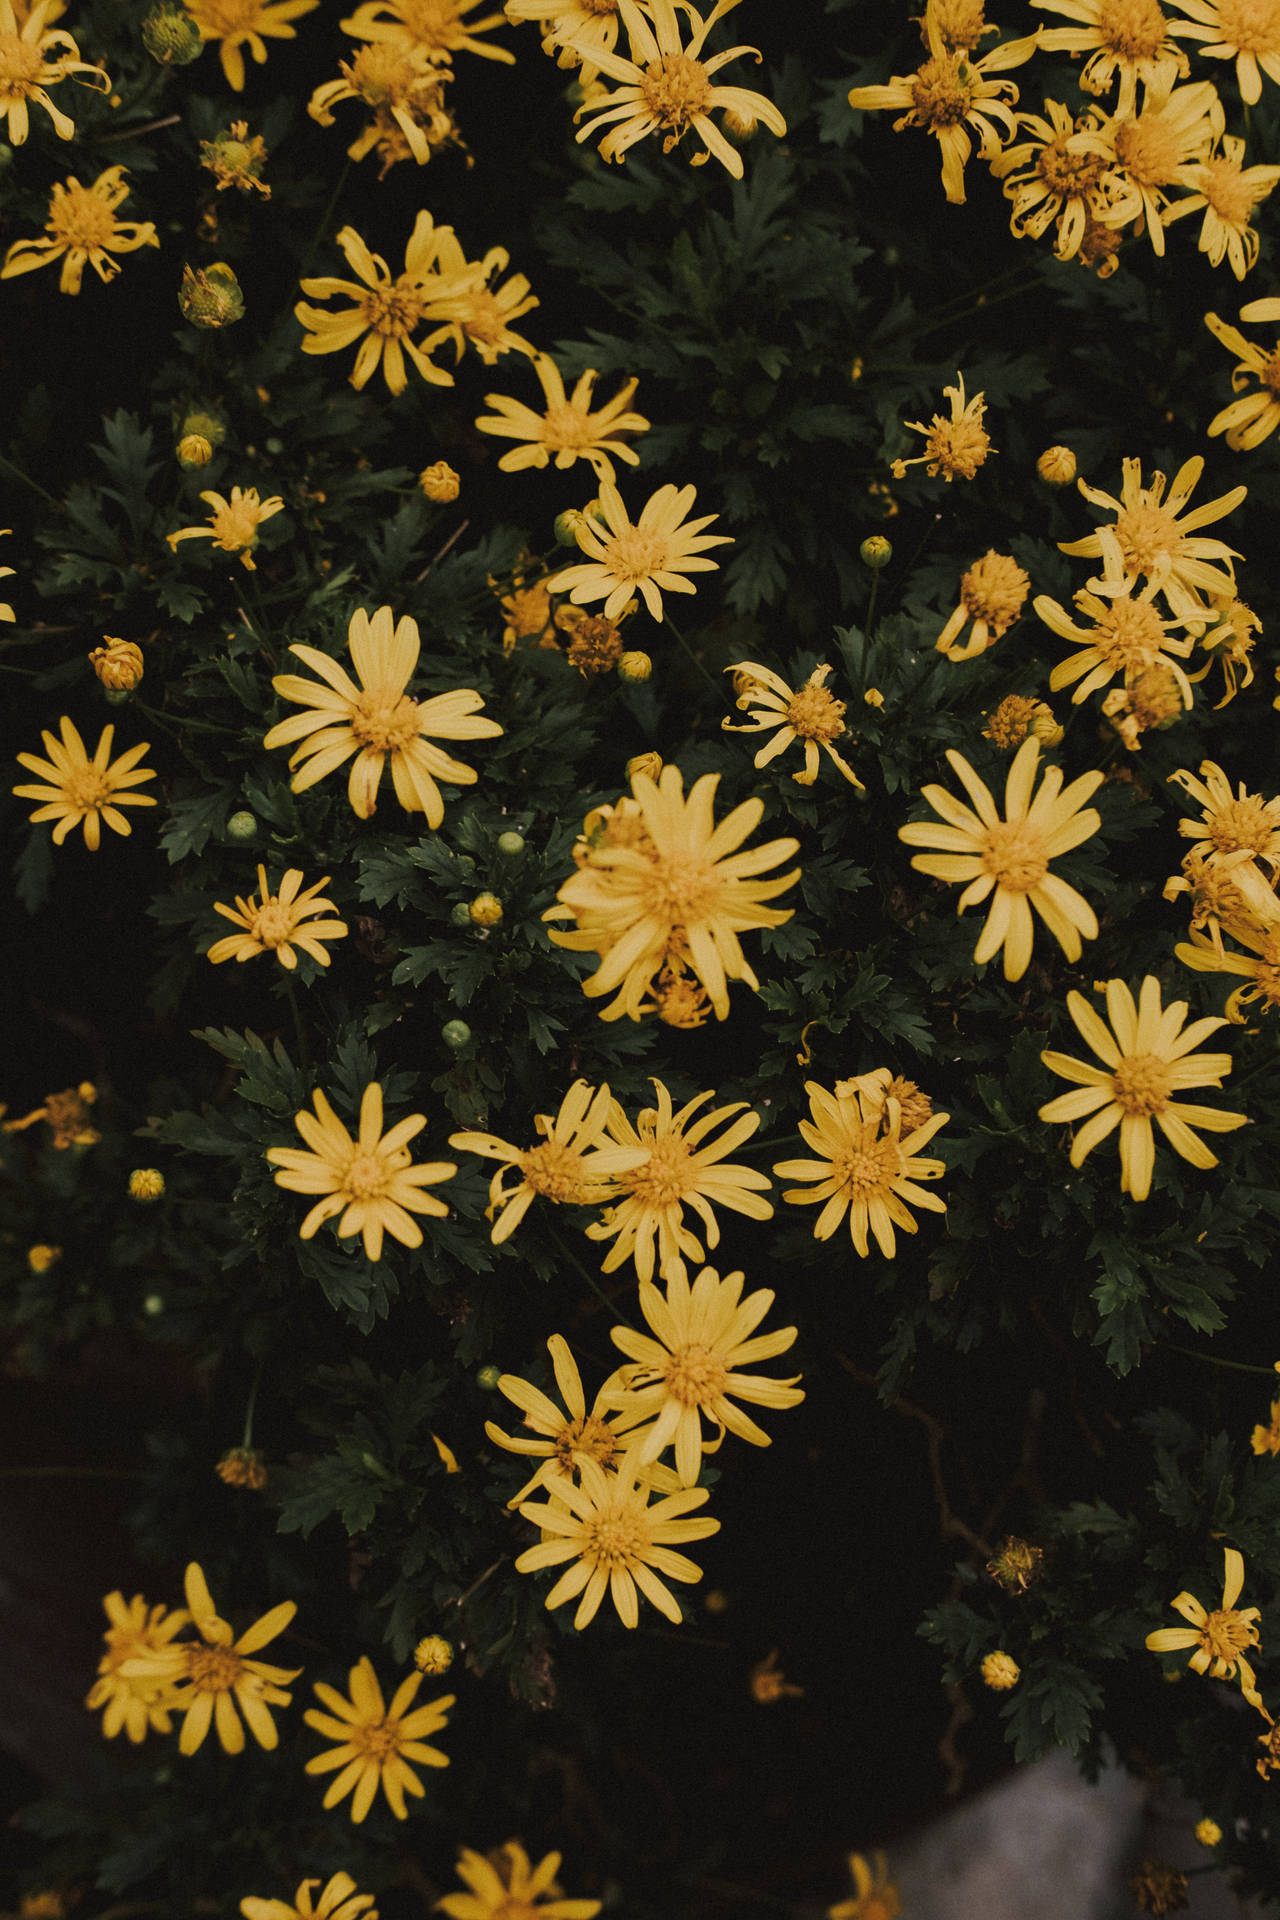 Bạn yêu thích vẻ đẹp cổ điển của hoa vàng? Hãy ngắm nhìn hình ảnh này và cùng khám phá chúng với tôi. Những cánh hoa vàng lung linh khoe sắc, đem lại cho bạn một khoảng khắc ngọt ngào và đầy ấn tượng. Những chi tiết tinh tế, rõ ràng của hình ảnh sẽ khiến bạn không thể rời mắt.